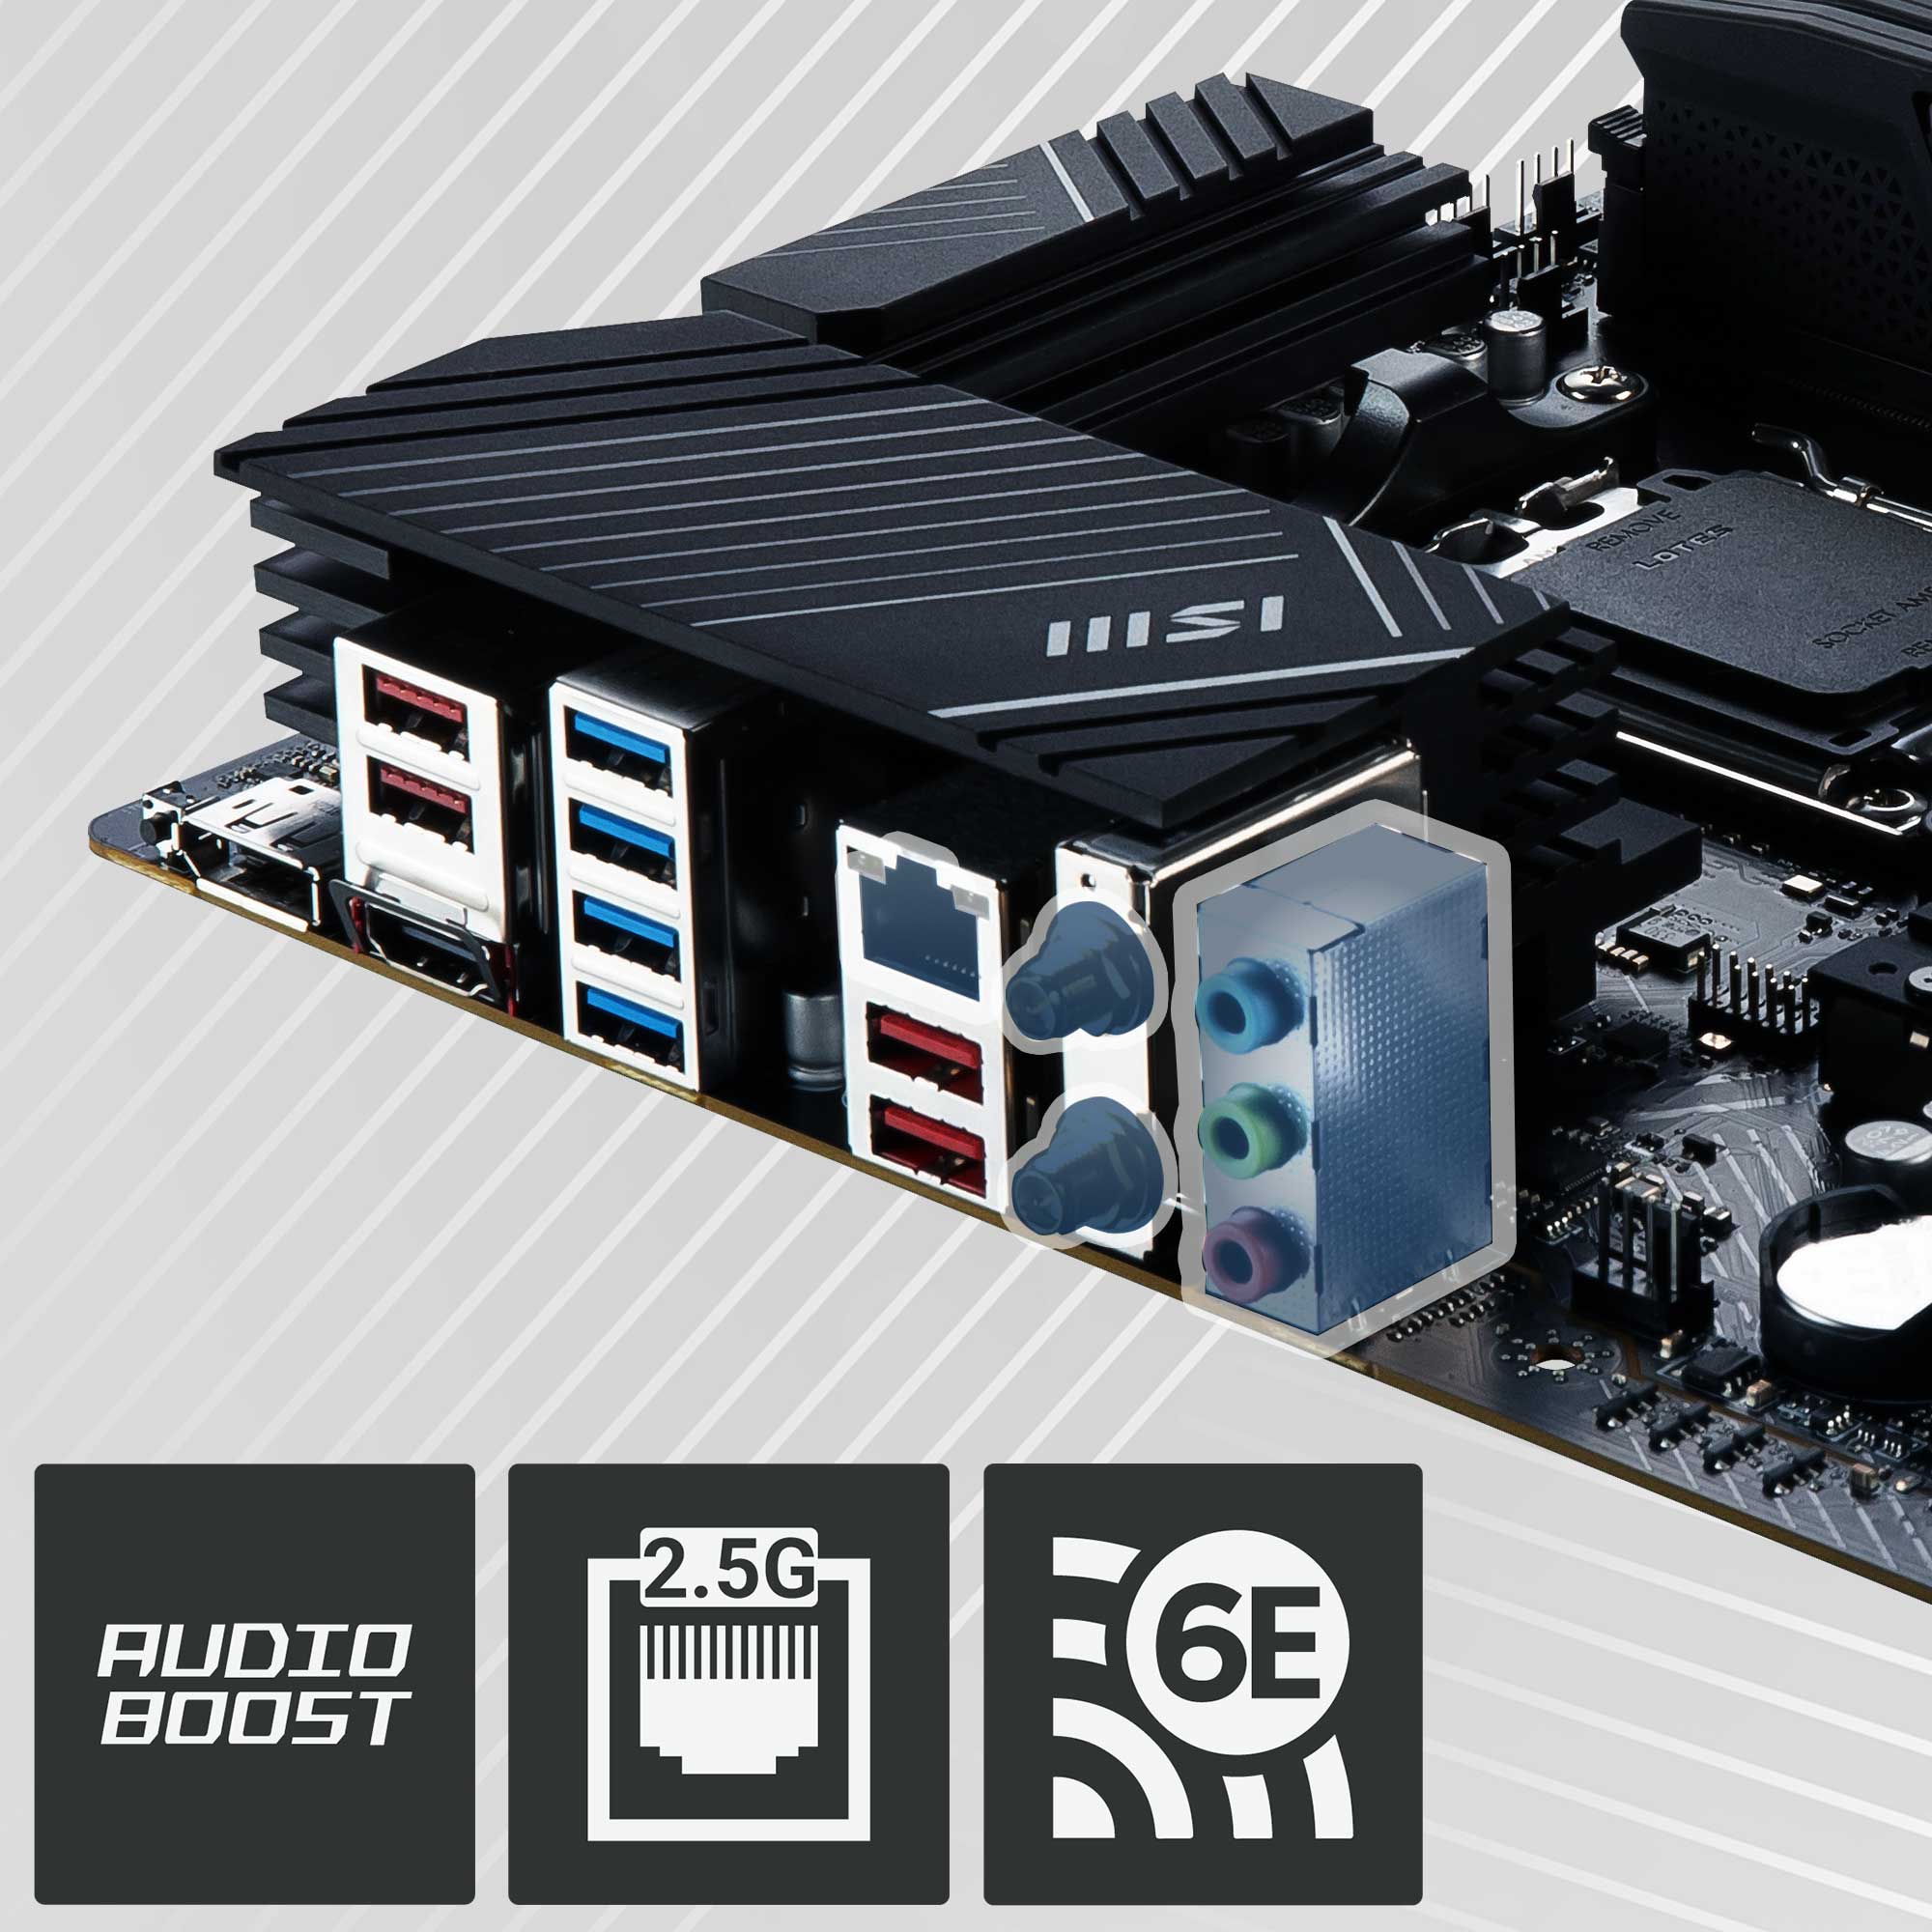 EH AMD 7000 Series Bundle 3 (Ryzen 5 7600 + MSI B650M-A WiFi)– EliteHubs